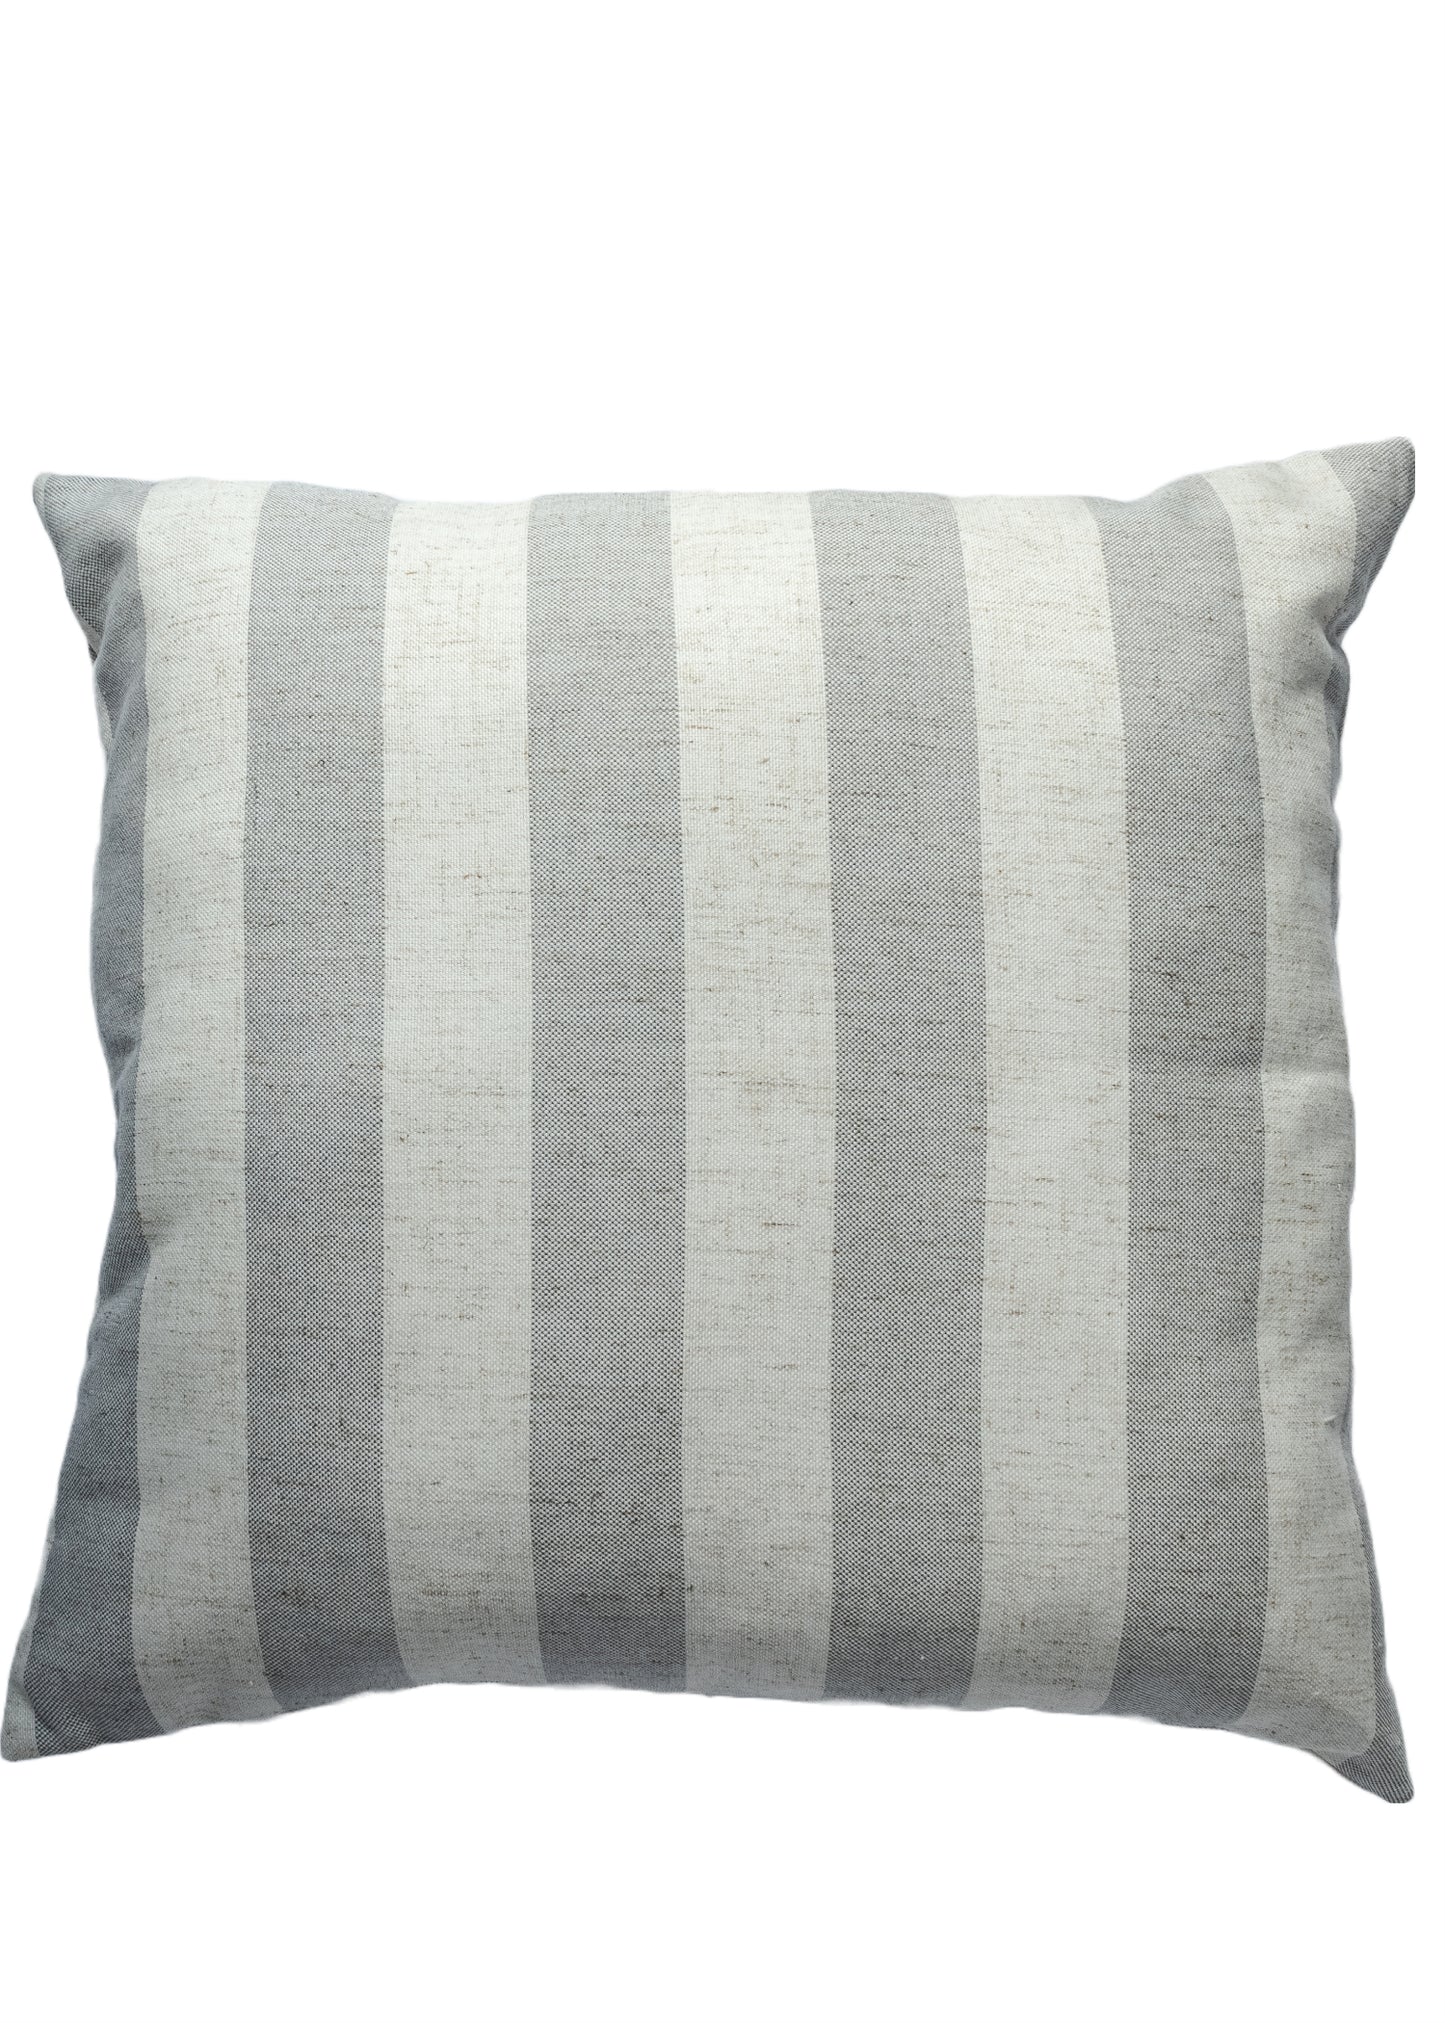 Rhosneigr  Stripe Grey Cushion